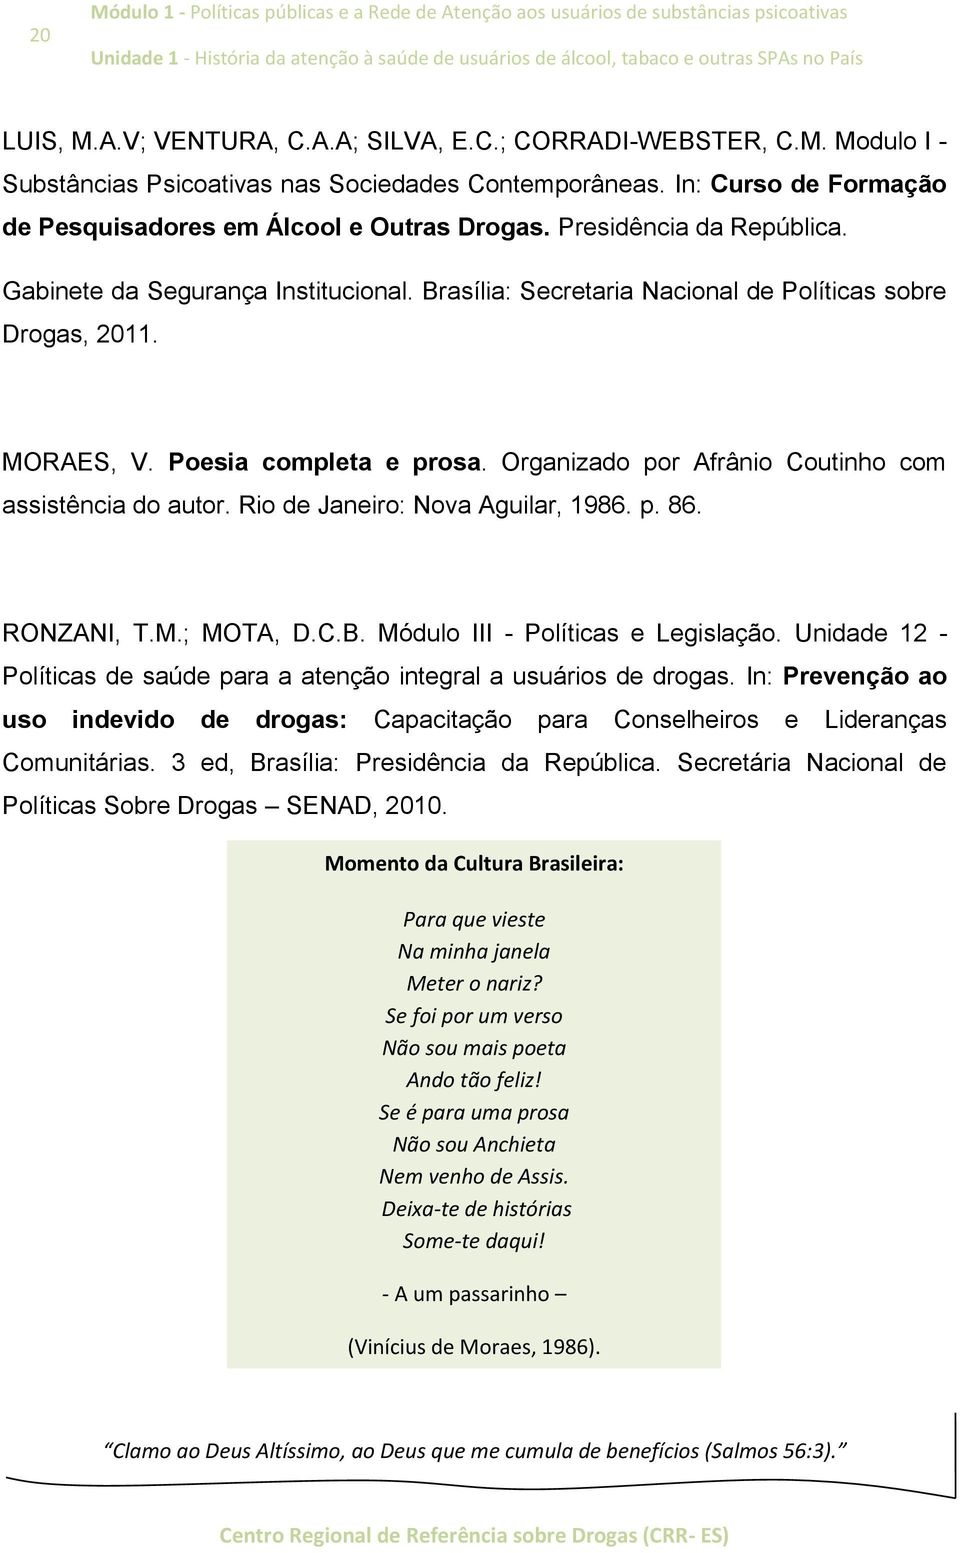 MORAES, V. Poesia completa e prosa. Organizado por Afrânio Coutinho com assistência do autor. Rio de Janeiro: Nova Aguilar, 1986. p. 86. RONZANI, T.M.; MOTA, D.C.B.